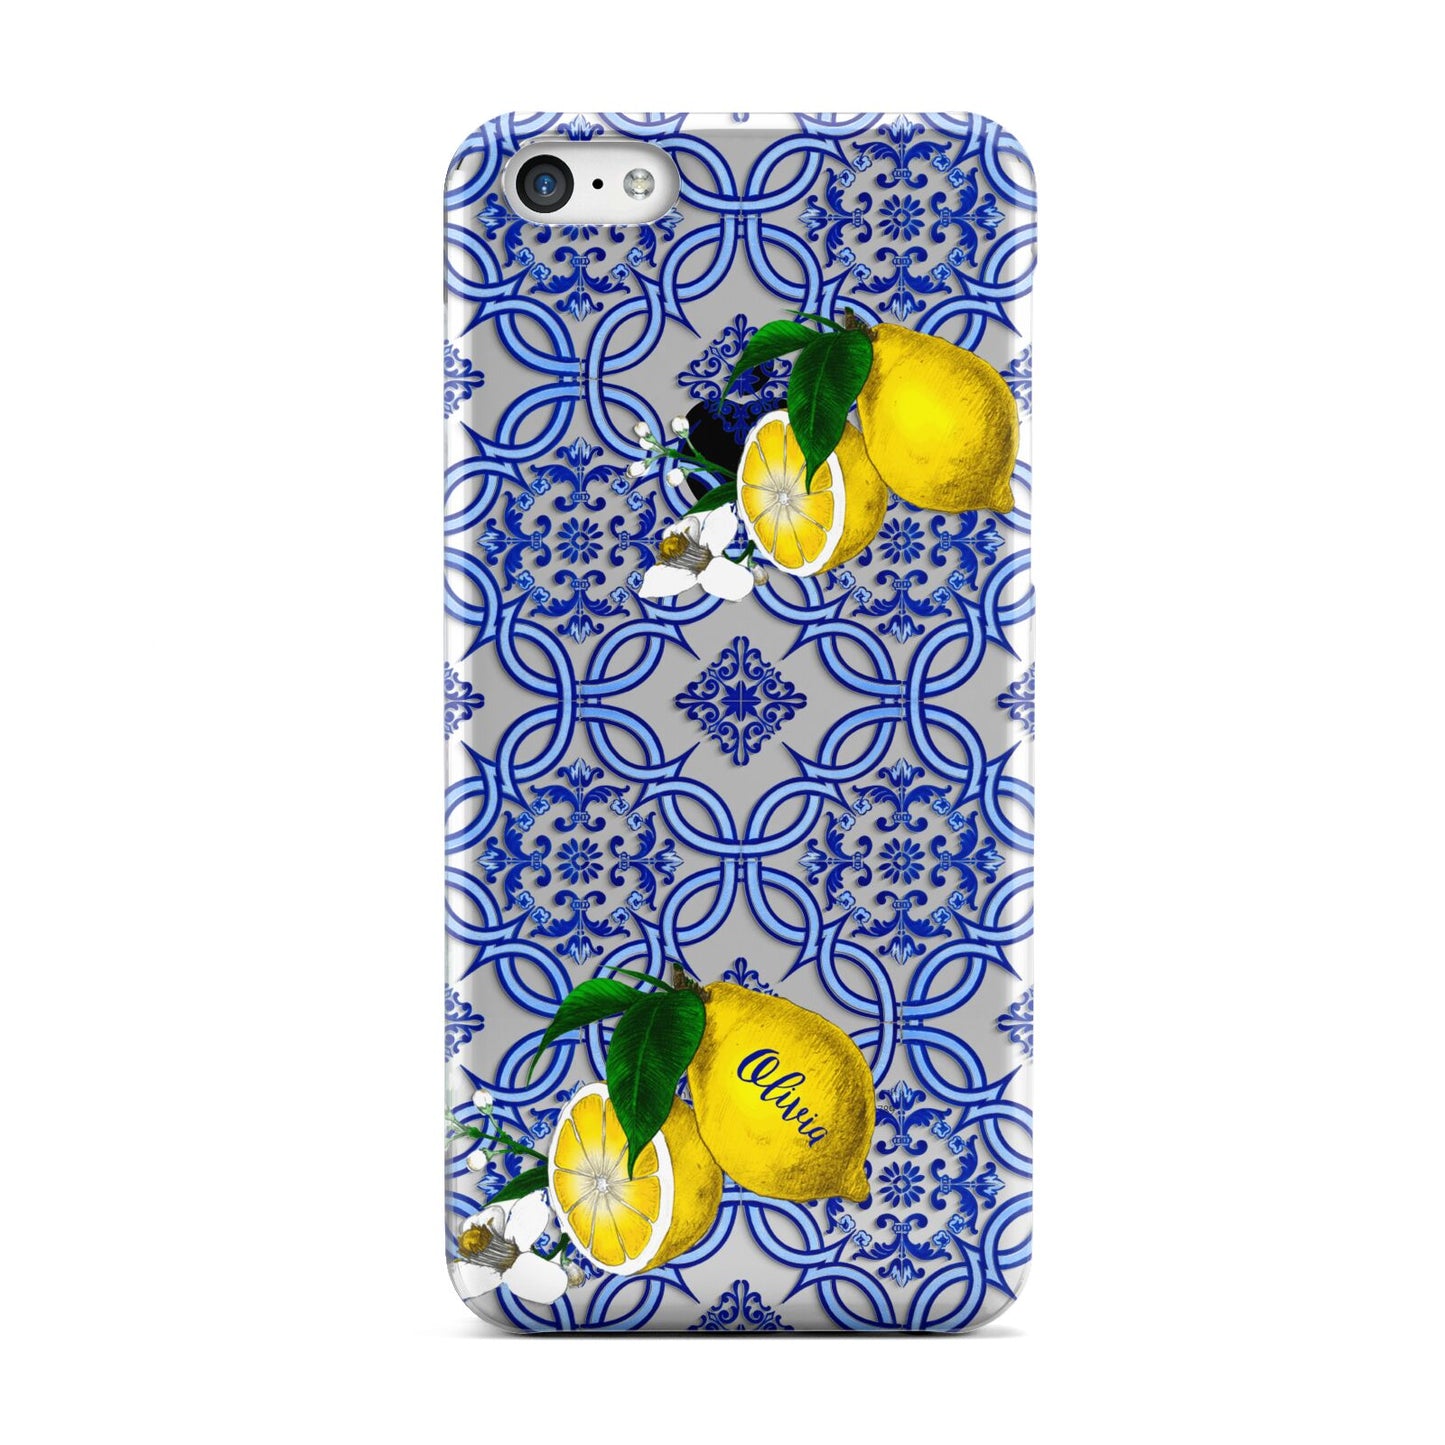 Personalised Mediterranean Tiles and Lemons Apple iPhone 5c Case